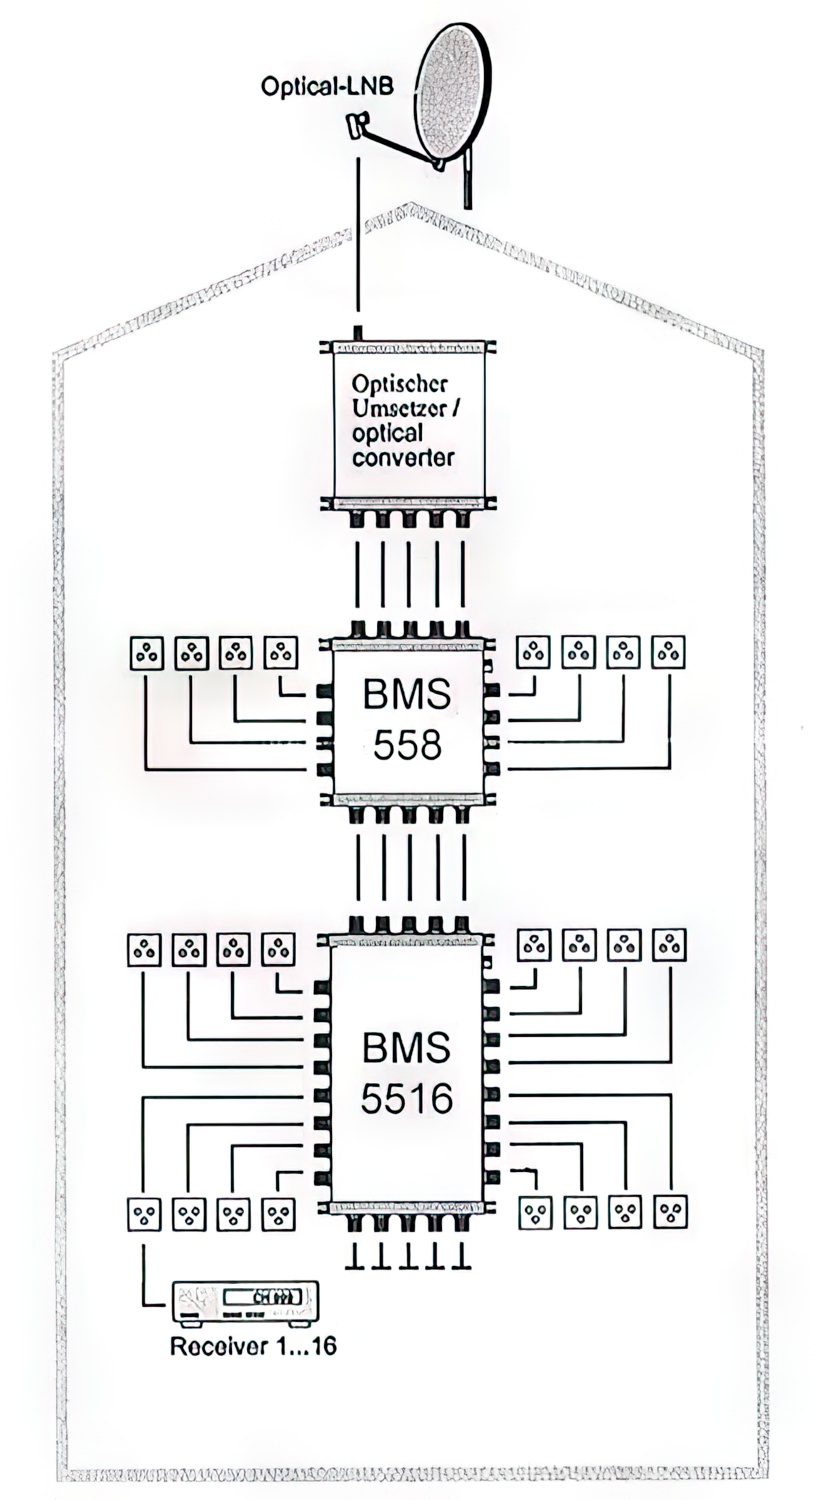 Multischalter 5/16 - Bauckhage BMS5516DC Kaskade für 16 Teilnehmer-/bilder/big/bms55_schematic.jpg